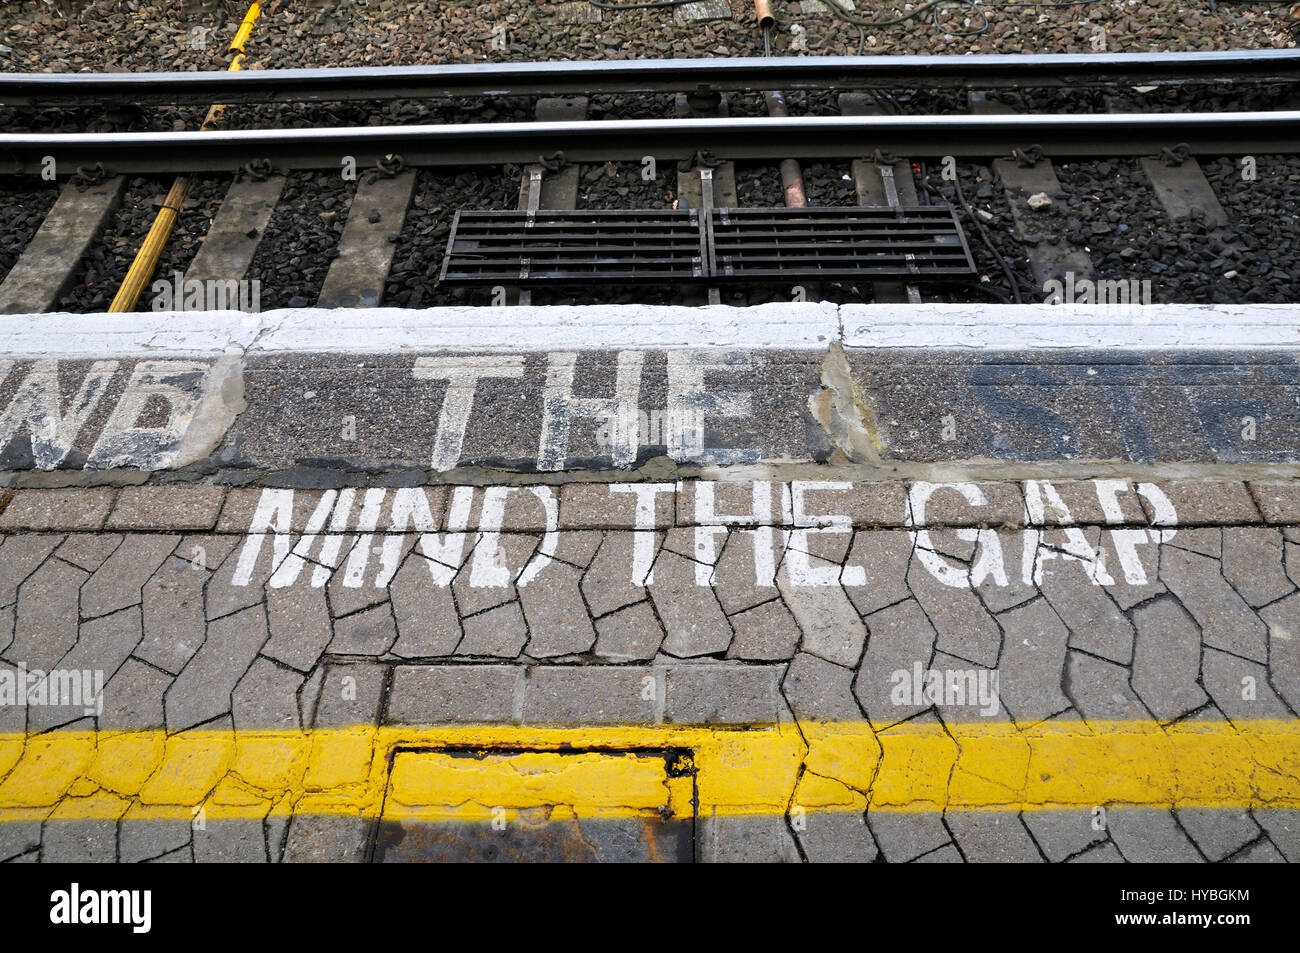 L'esprit l'écart peint sur le bord d'une plate-forme du train Banque D'Images